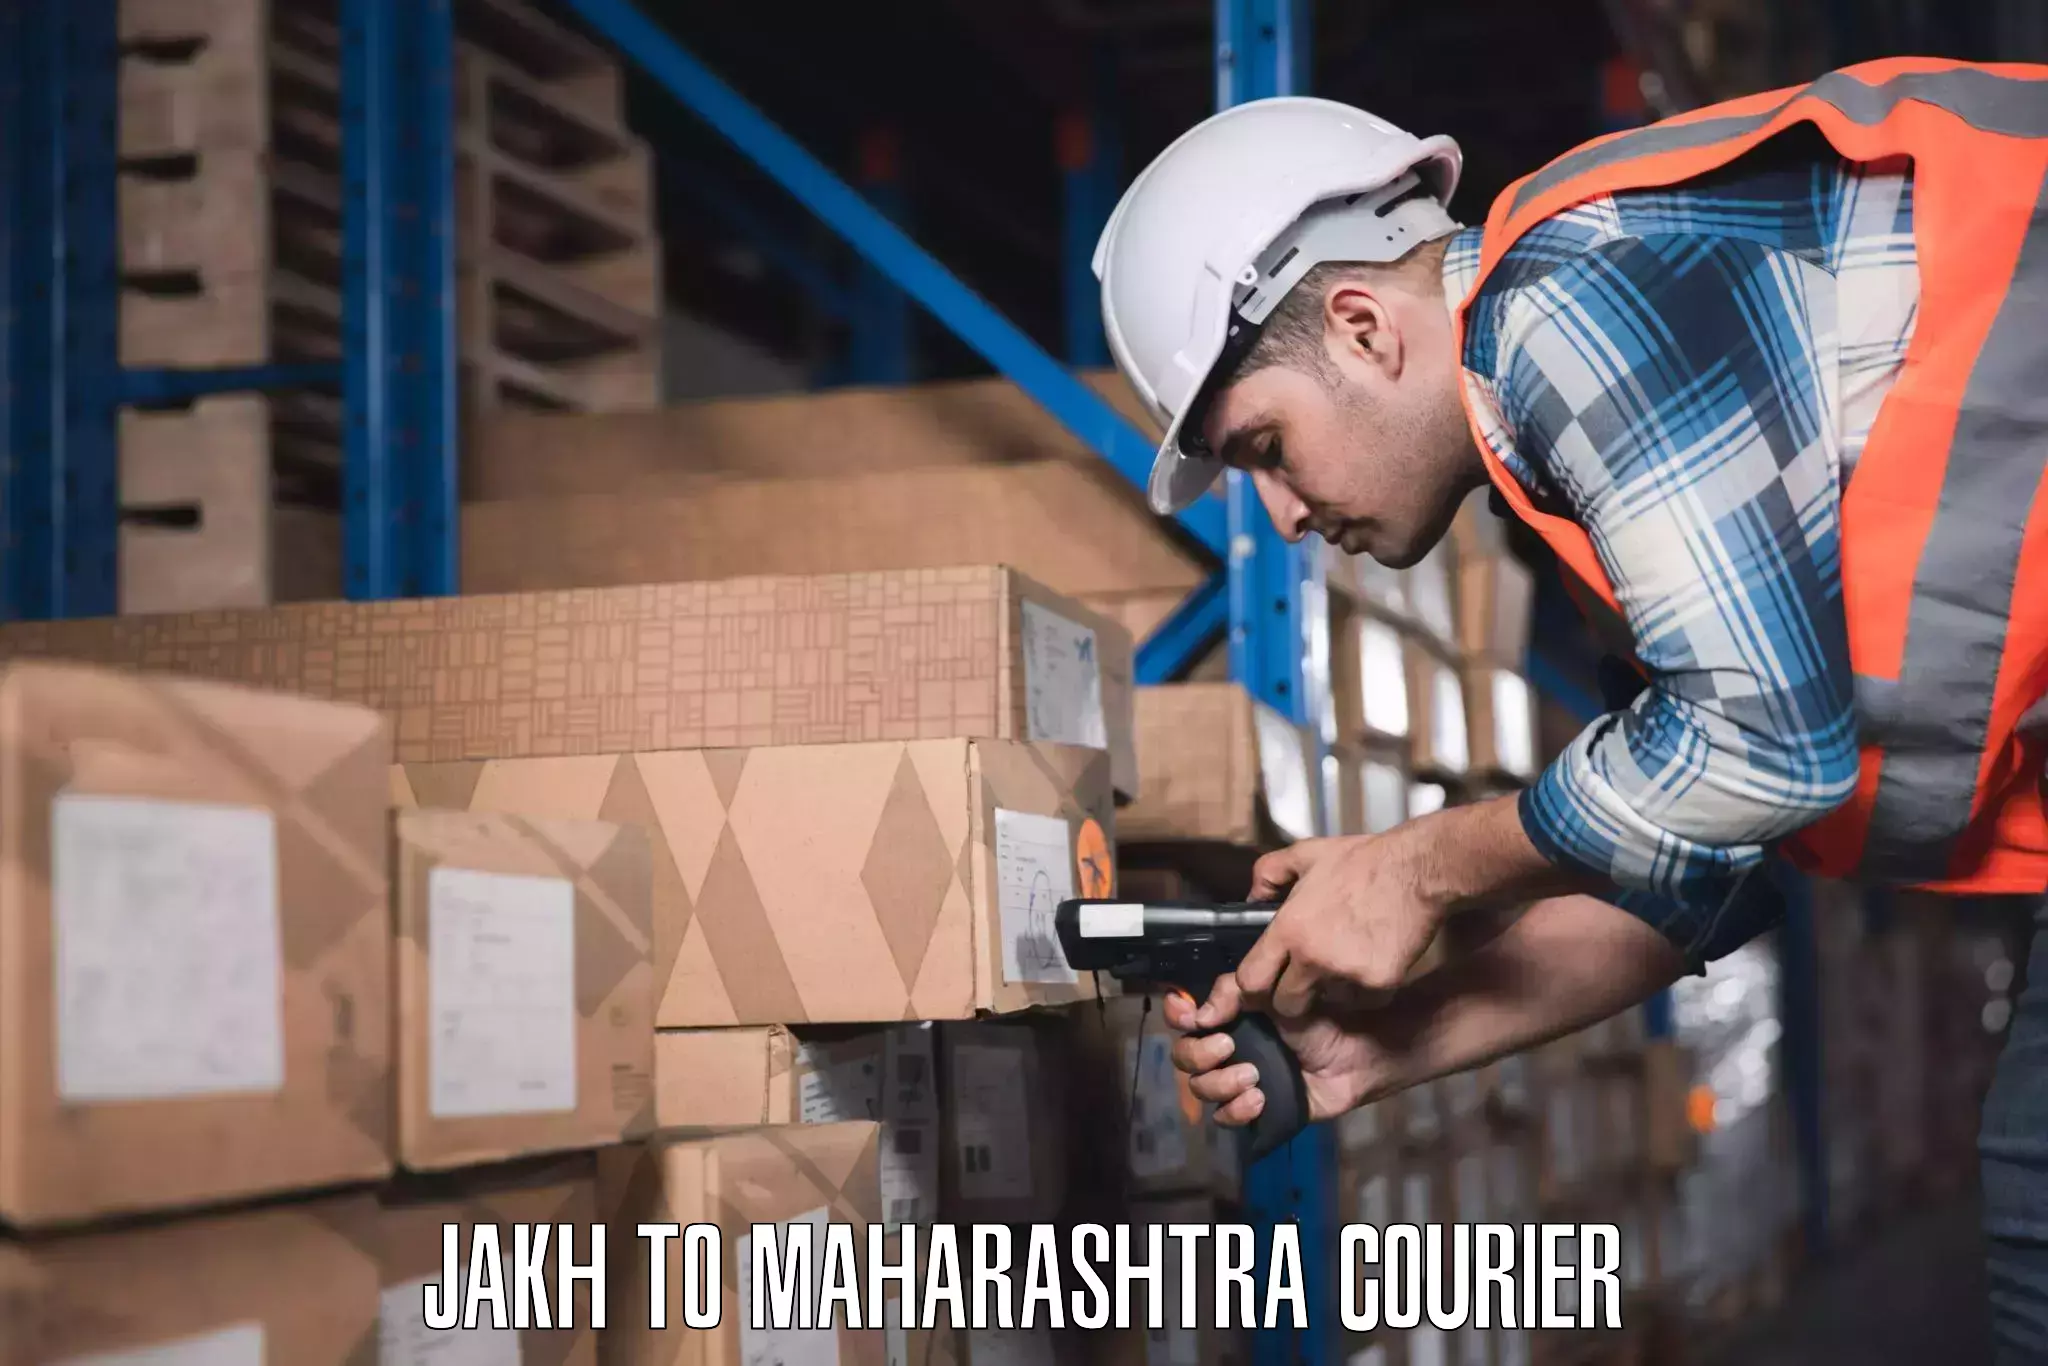 Baggage shipping optimization Jakh to Maharashtra